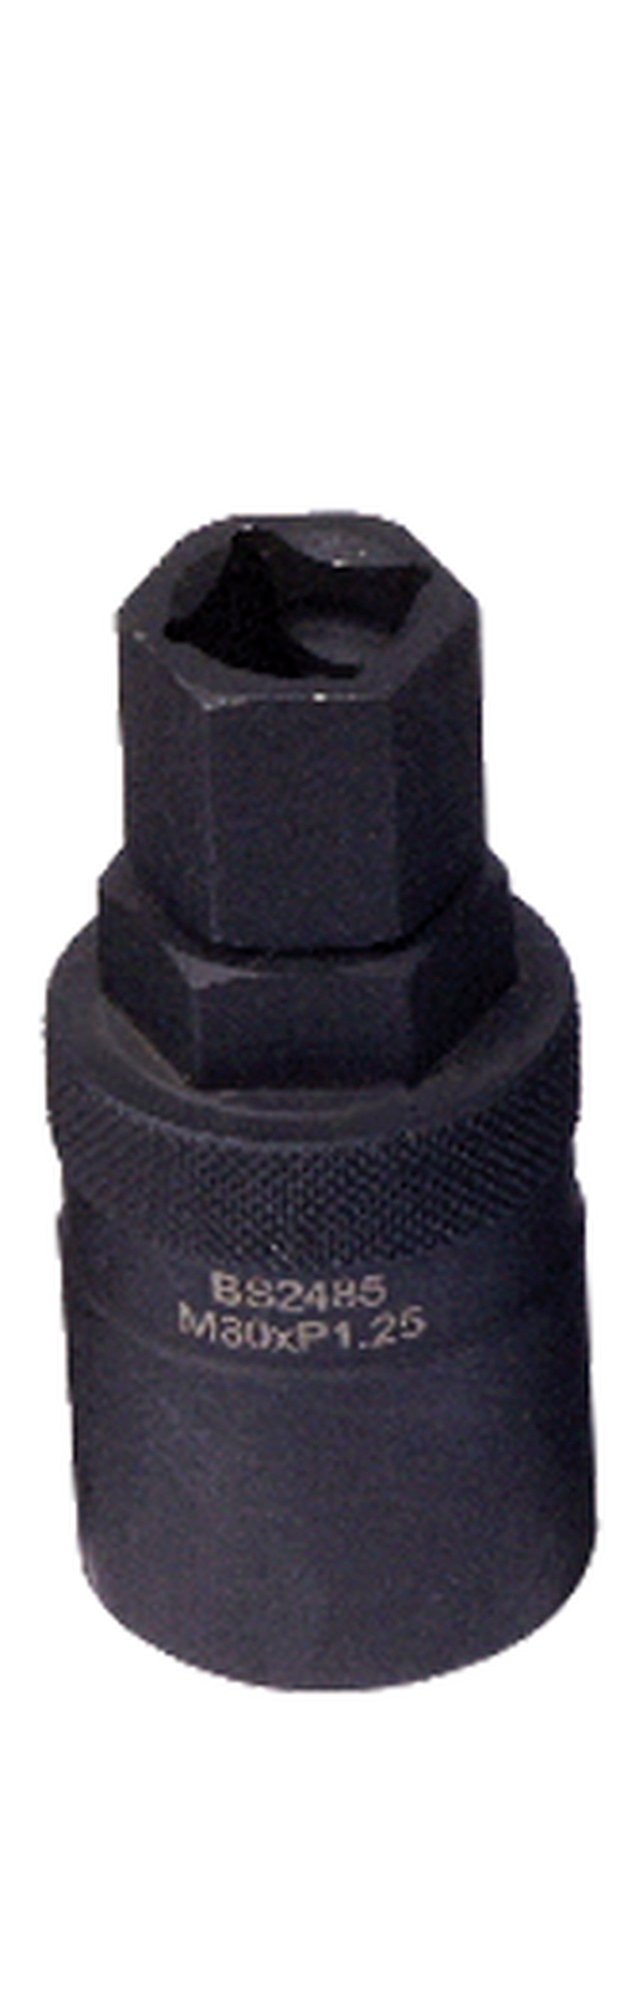 Obrázek produktu stahovák rotoru alternátoru (M30 x 1,25), BIKESERVICE BS2485